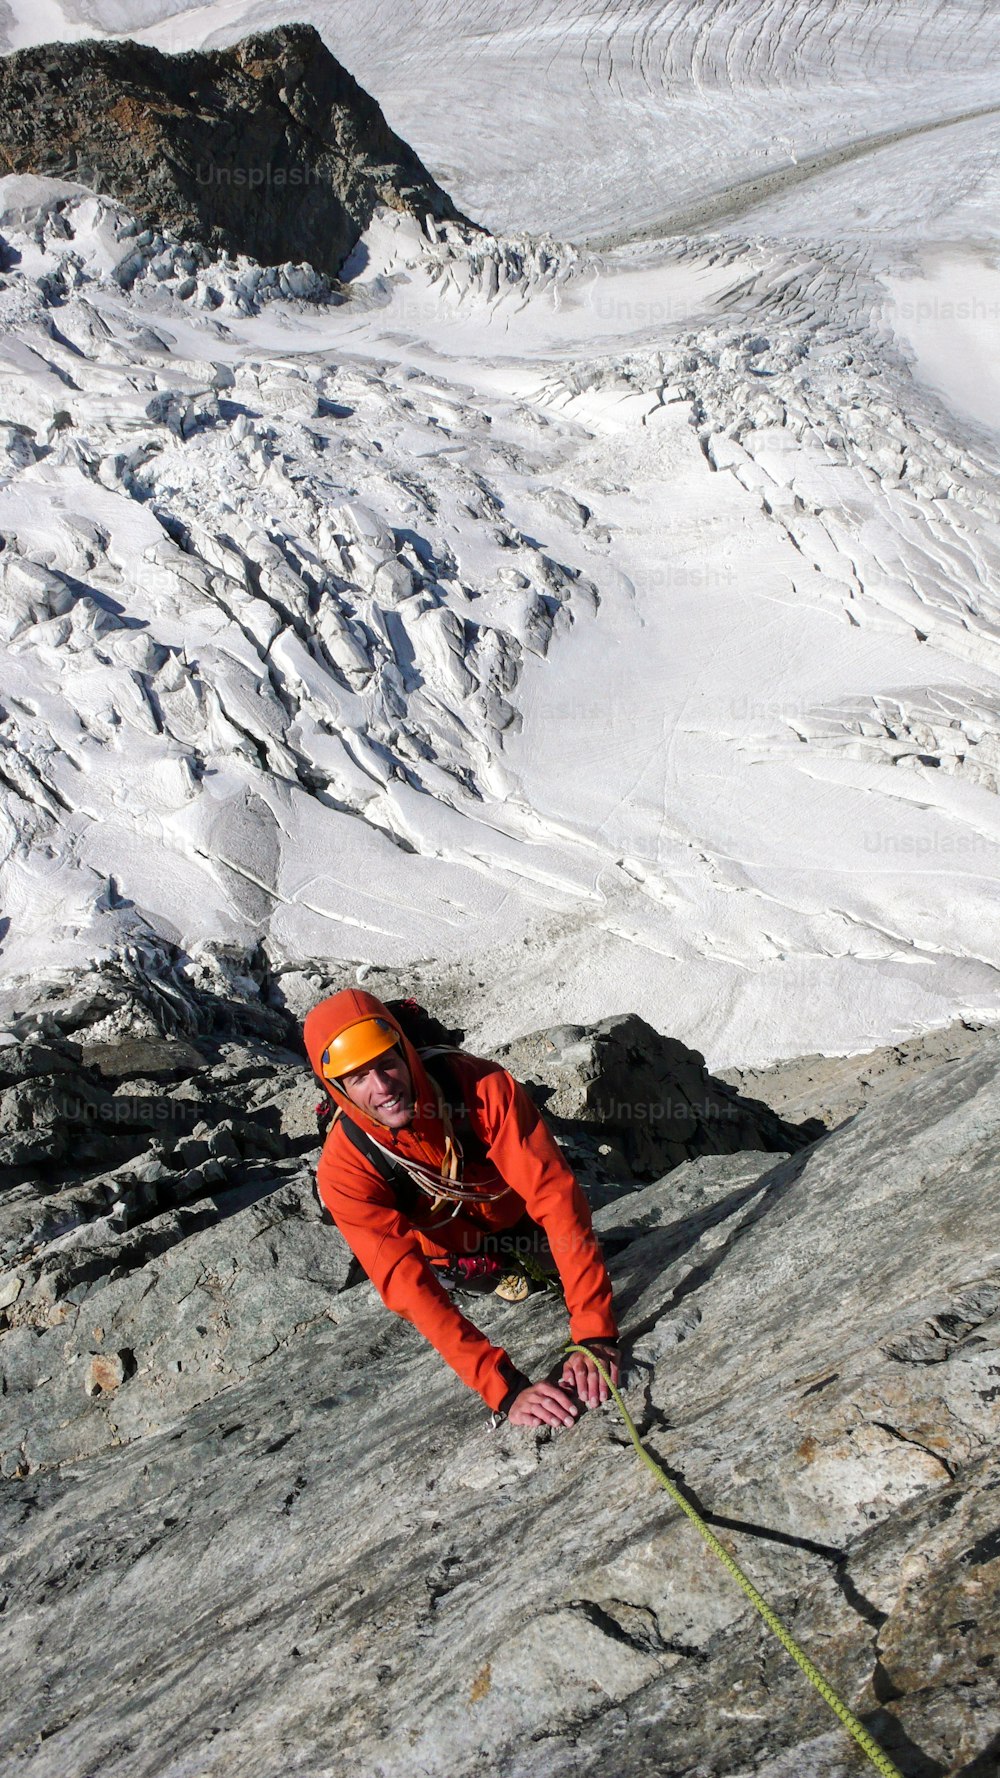 サンモリッツ近郊のスイスアルプスの氷河の上の露出した登山ルートを登る男性登山者